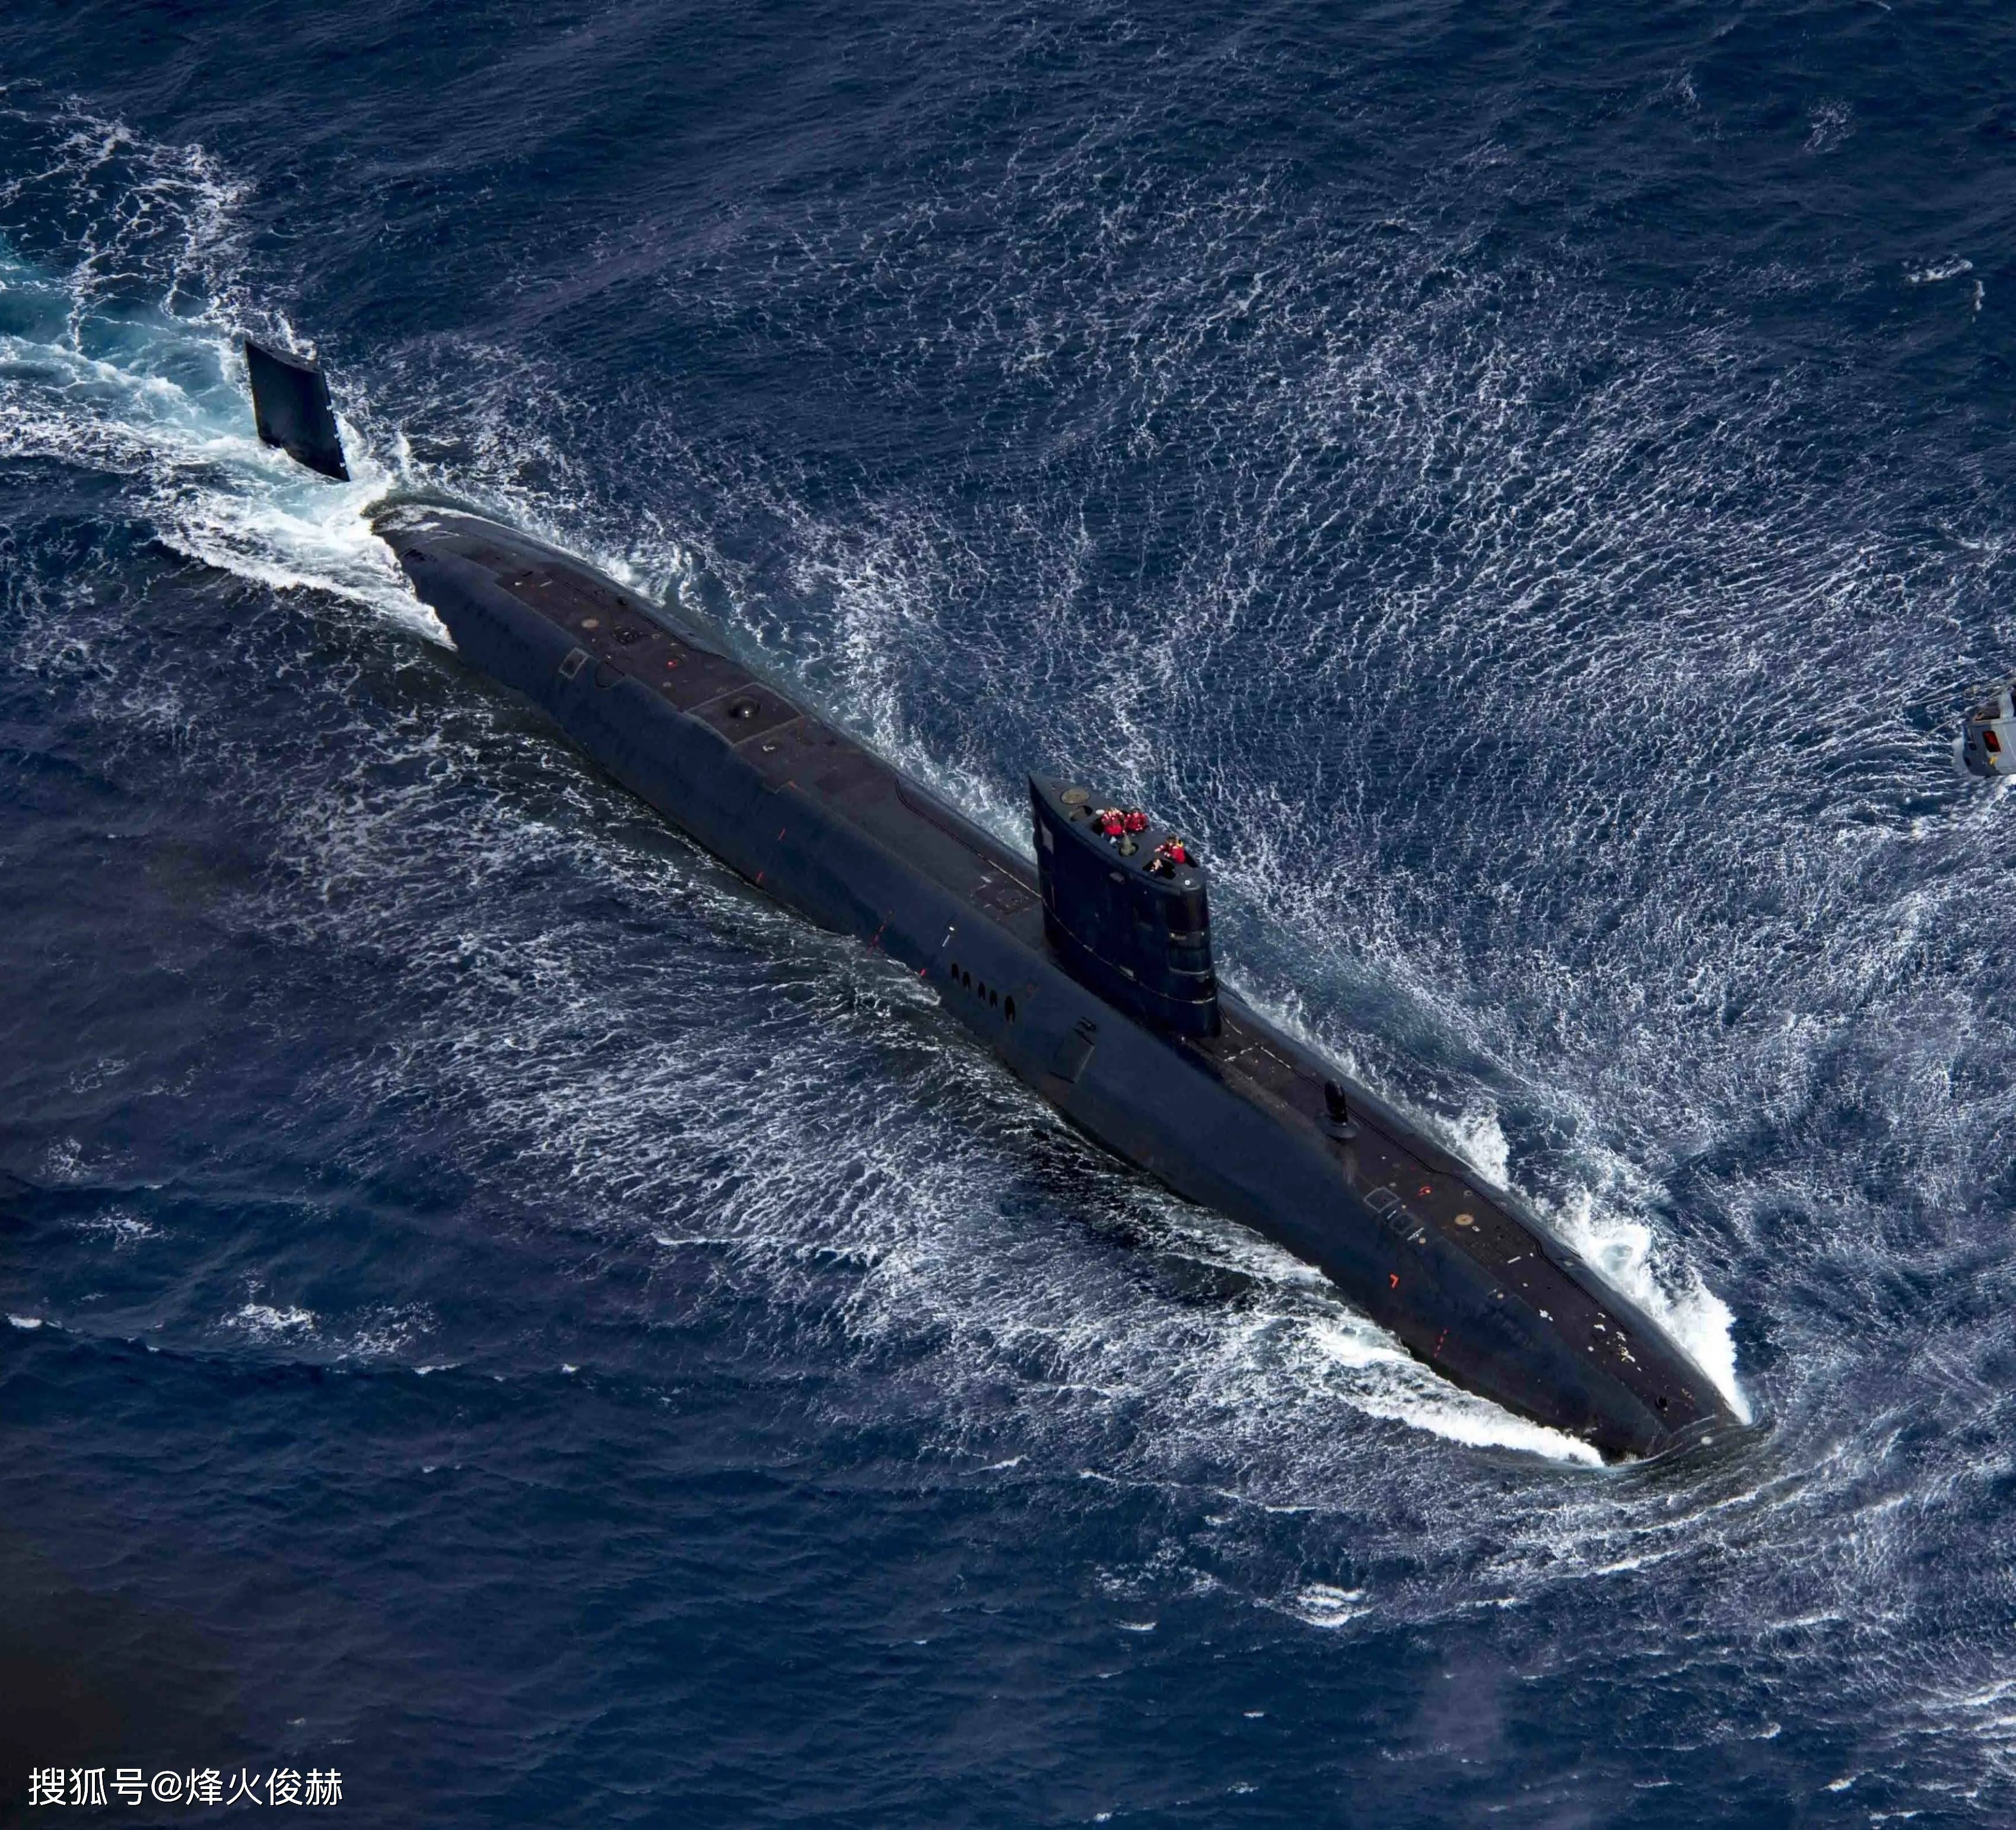 此前北部战区海军潜艇部队公开了弹药更新画面,水兵将yj